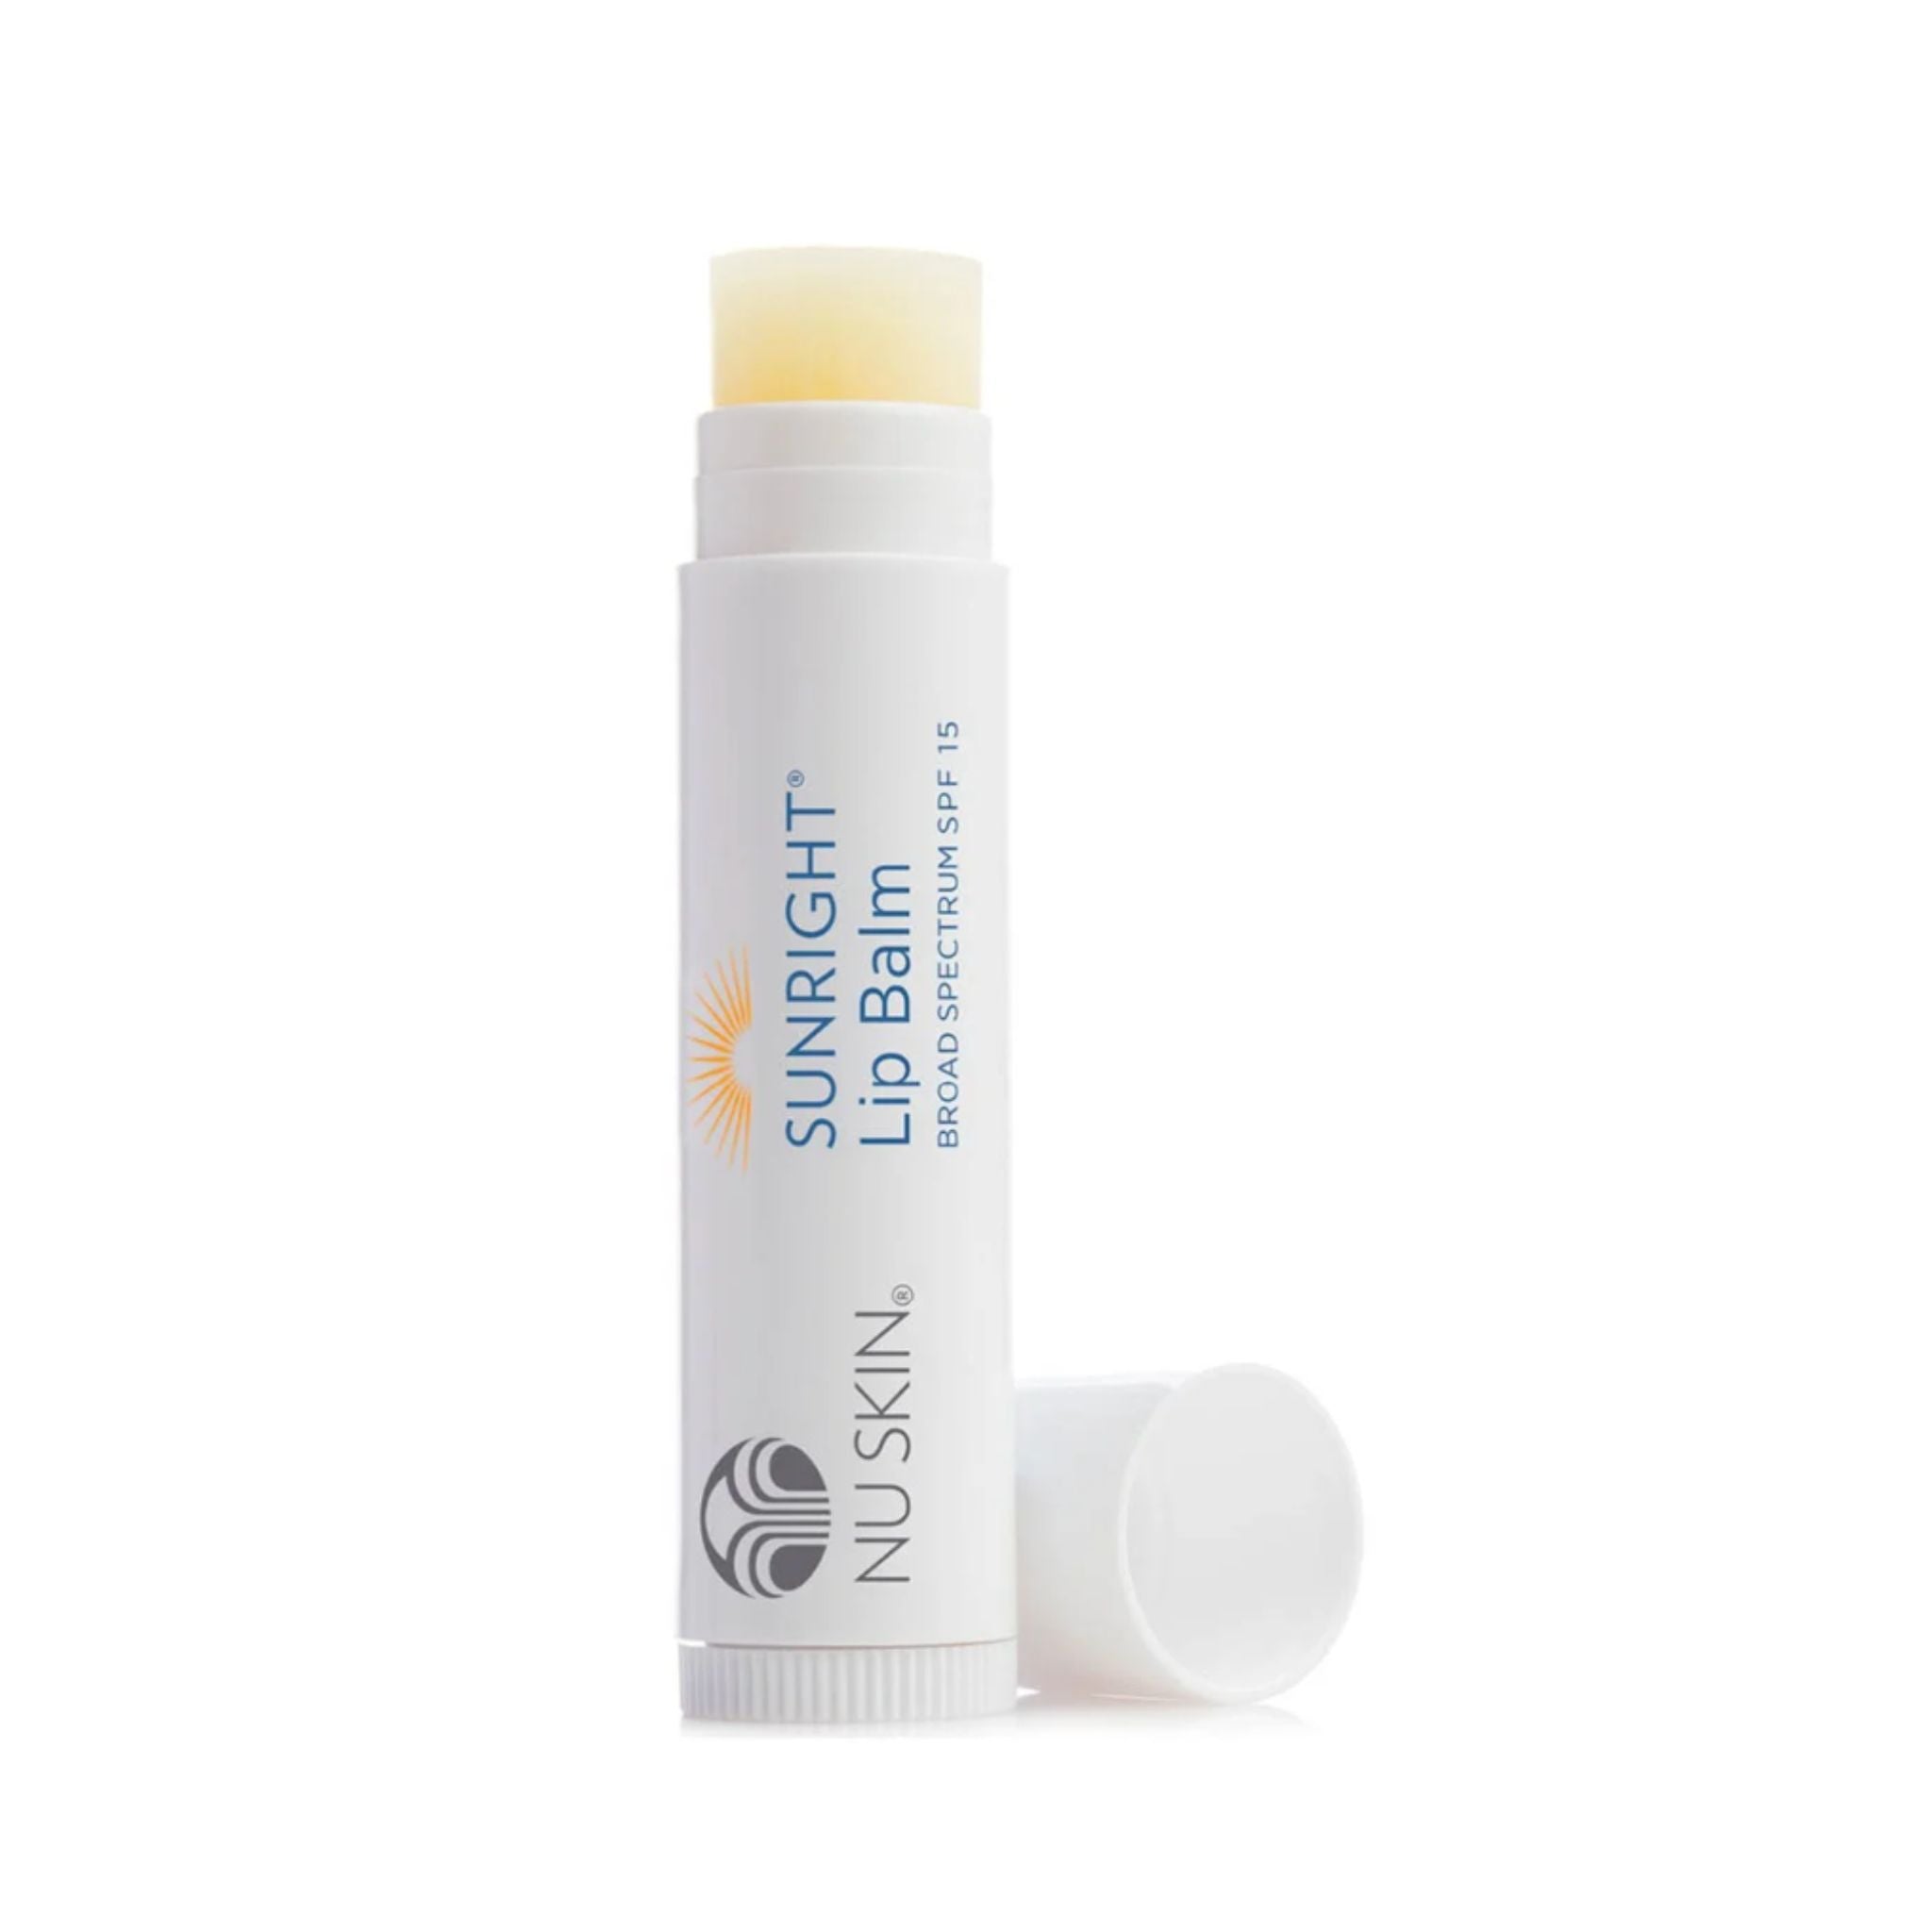 Sunright Lip Balm SPF 15 with sunflower oil, Vitamin E - thatnatureworld